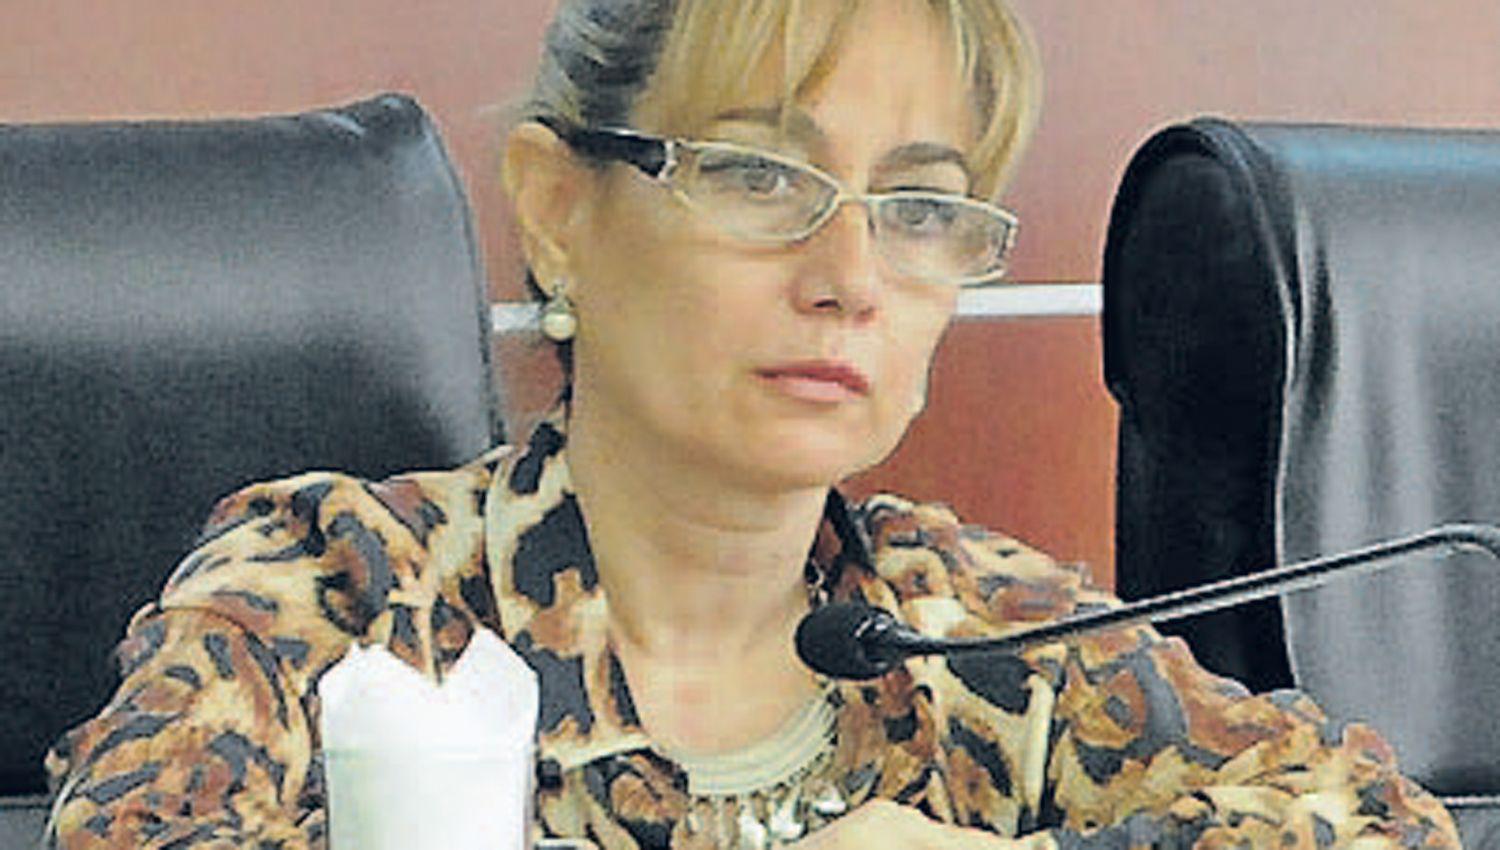 La vocal María Eugenia Carabajal
a cargo de un juicio unipersonal